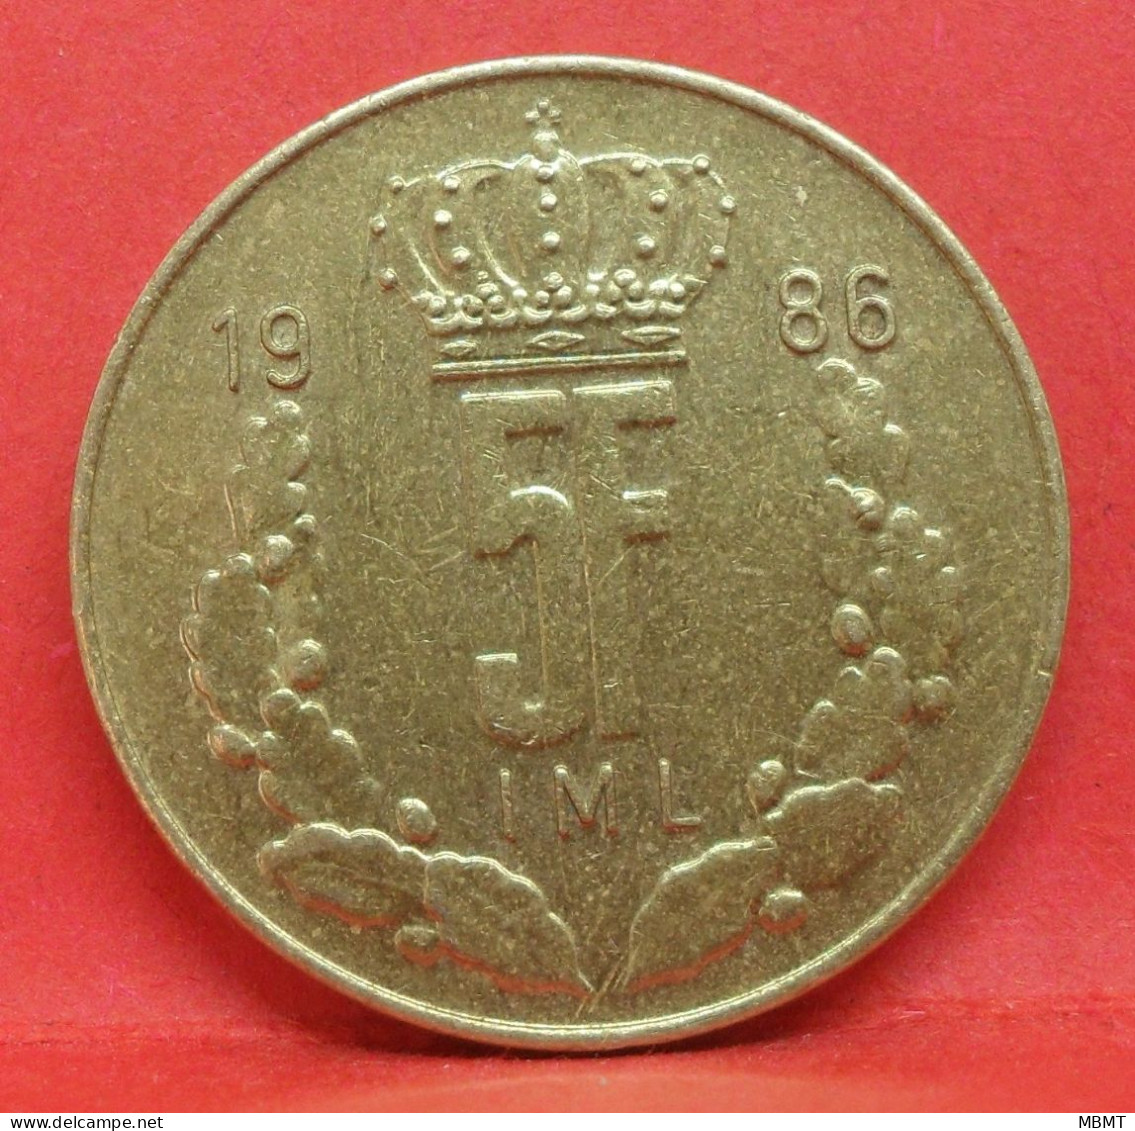 5 Francs 1986 - TTB - Pièce De Monnaie Luxembourg - Article N°3672 - Luxembourg